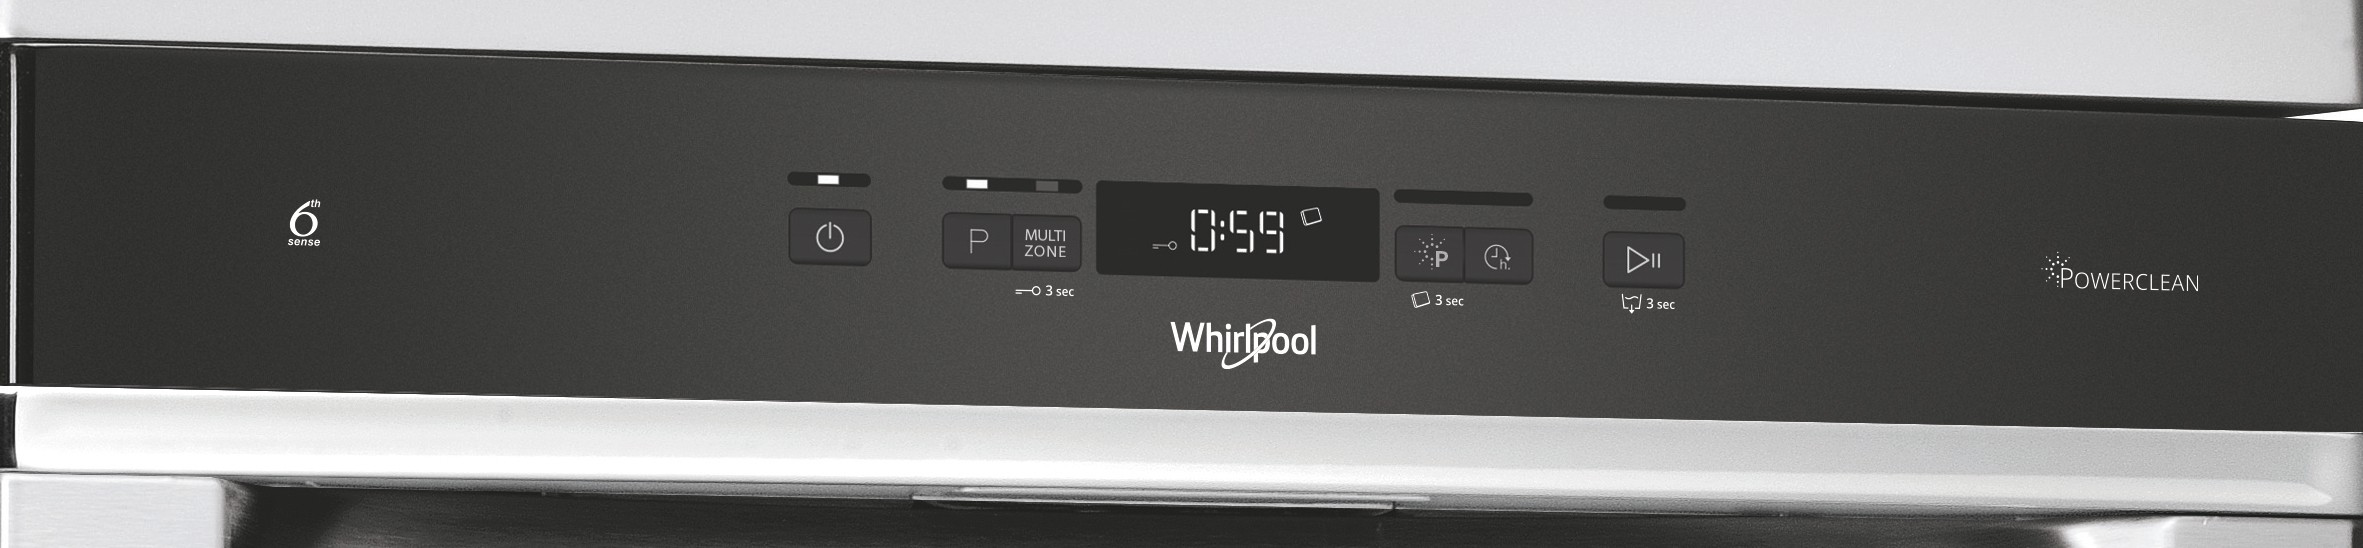 WHIRLPOOL Lave vaisselle 60 cm PowerClean Pro14 couverts